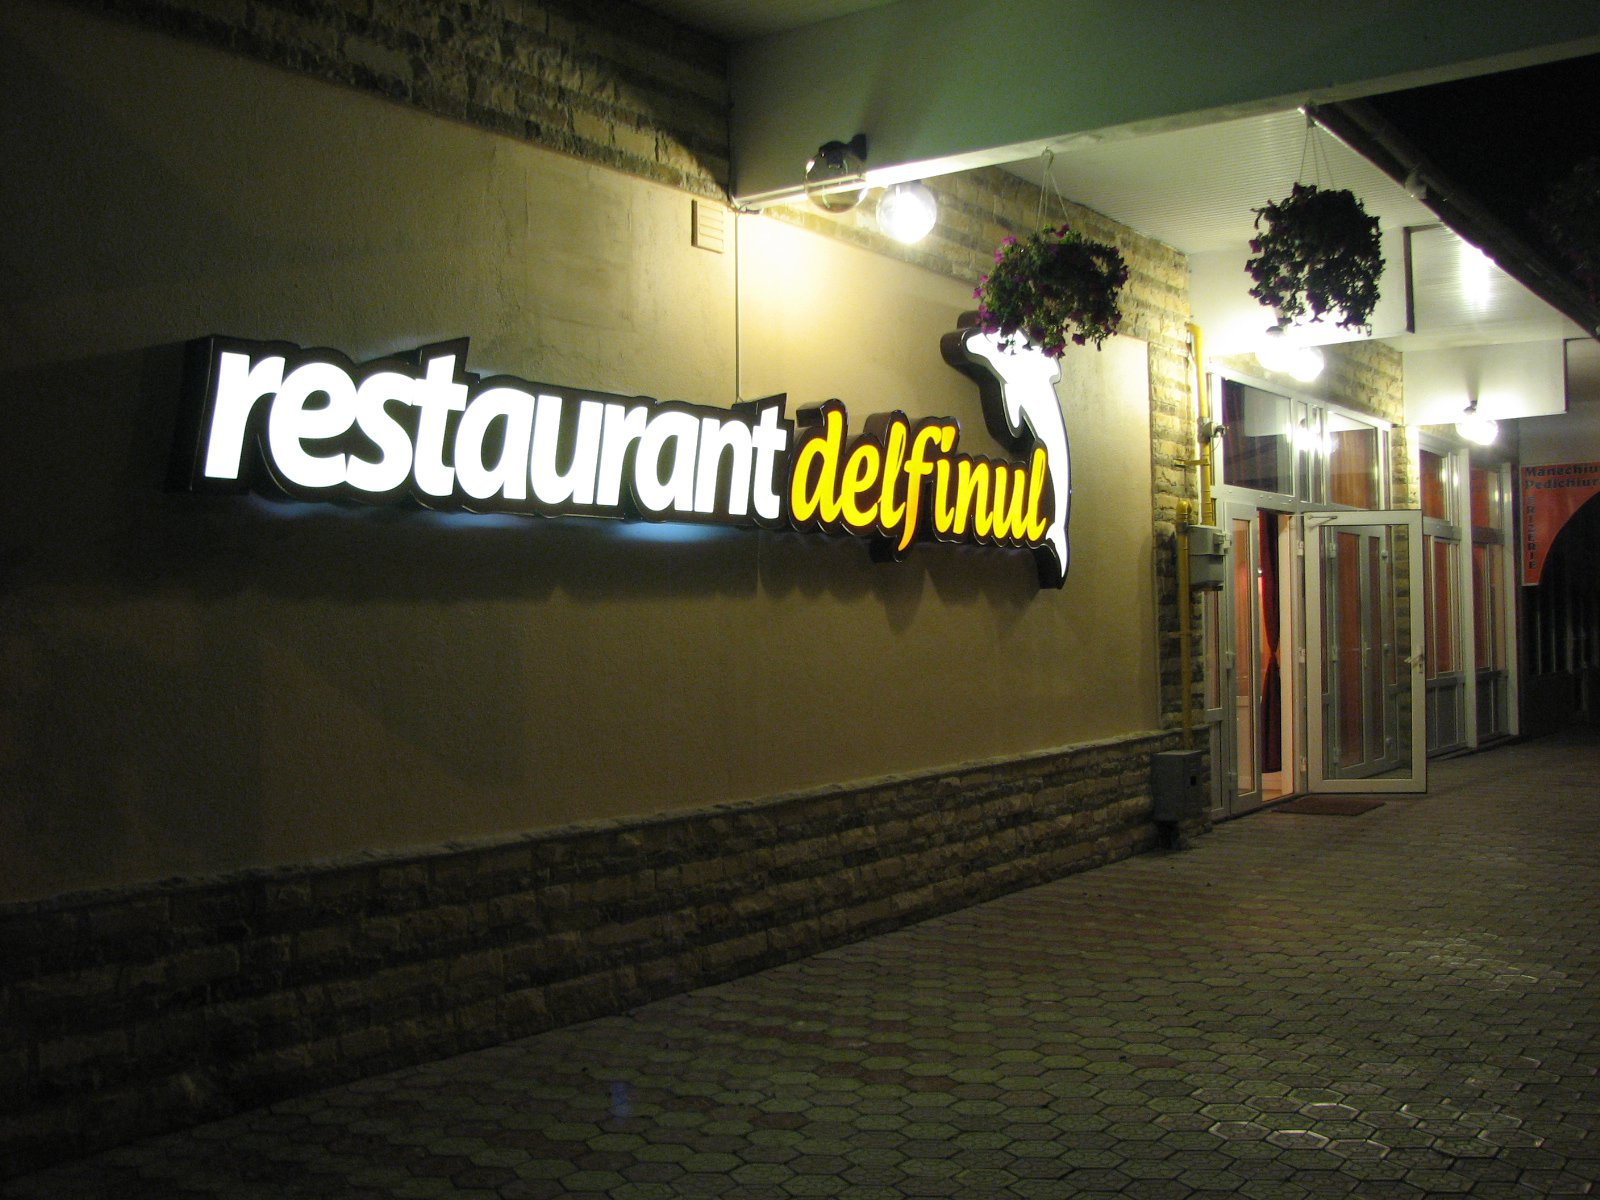 Restaurant Delfinul